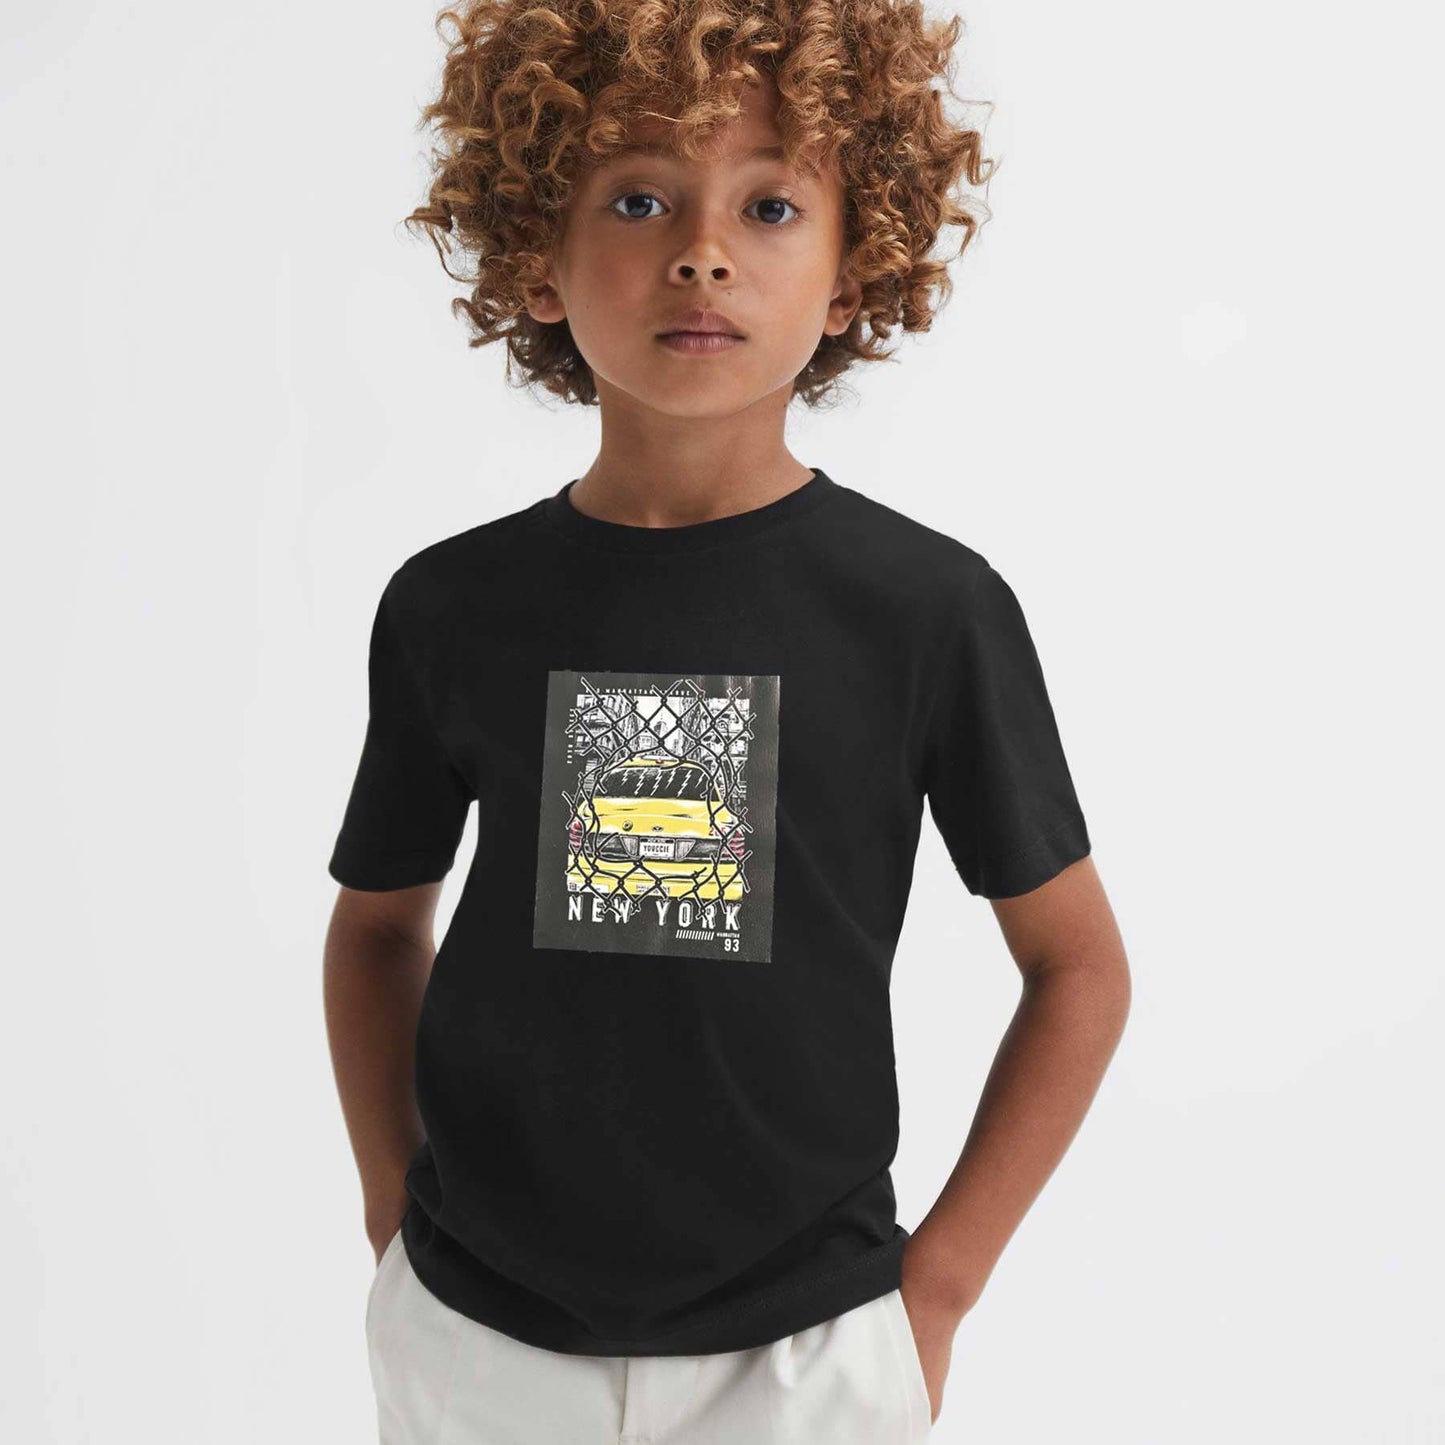 Polo Republica Boy's New York Taxi Printed Tee Shirt Boy's Tee Shirt Polo Republica Black 1-2 Years 